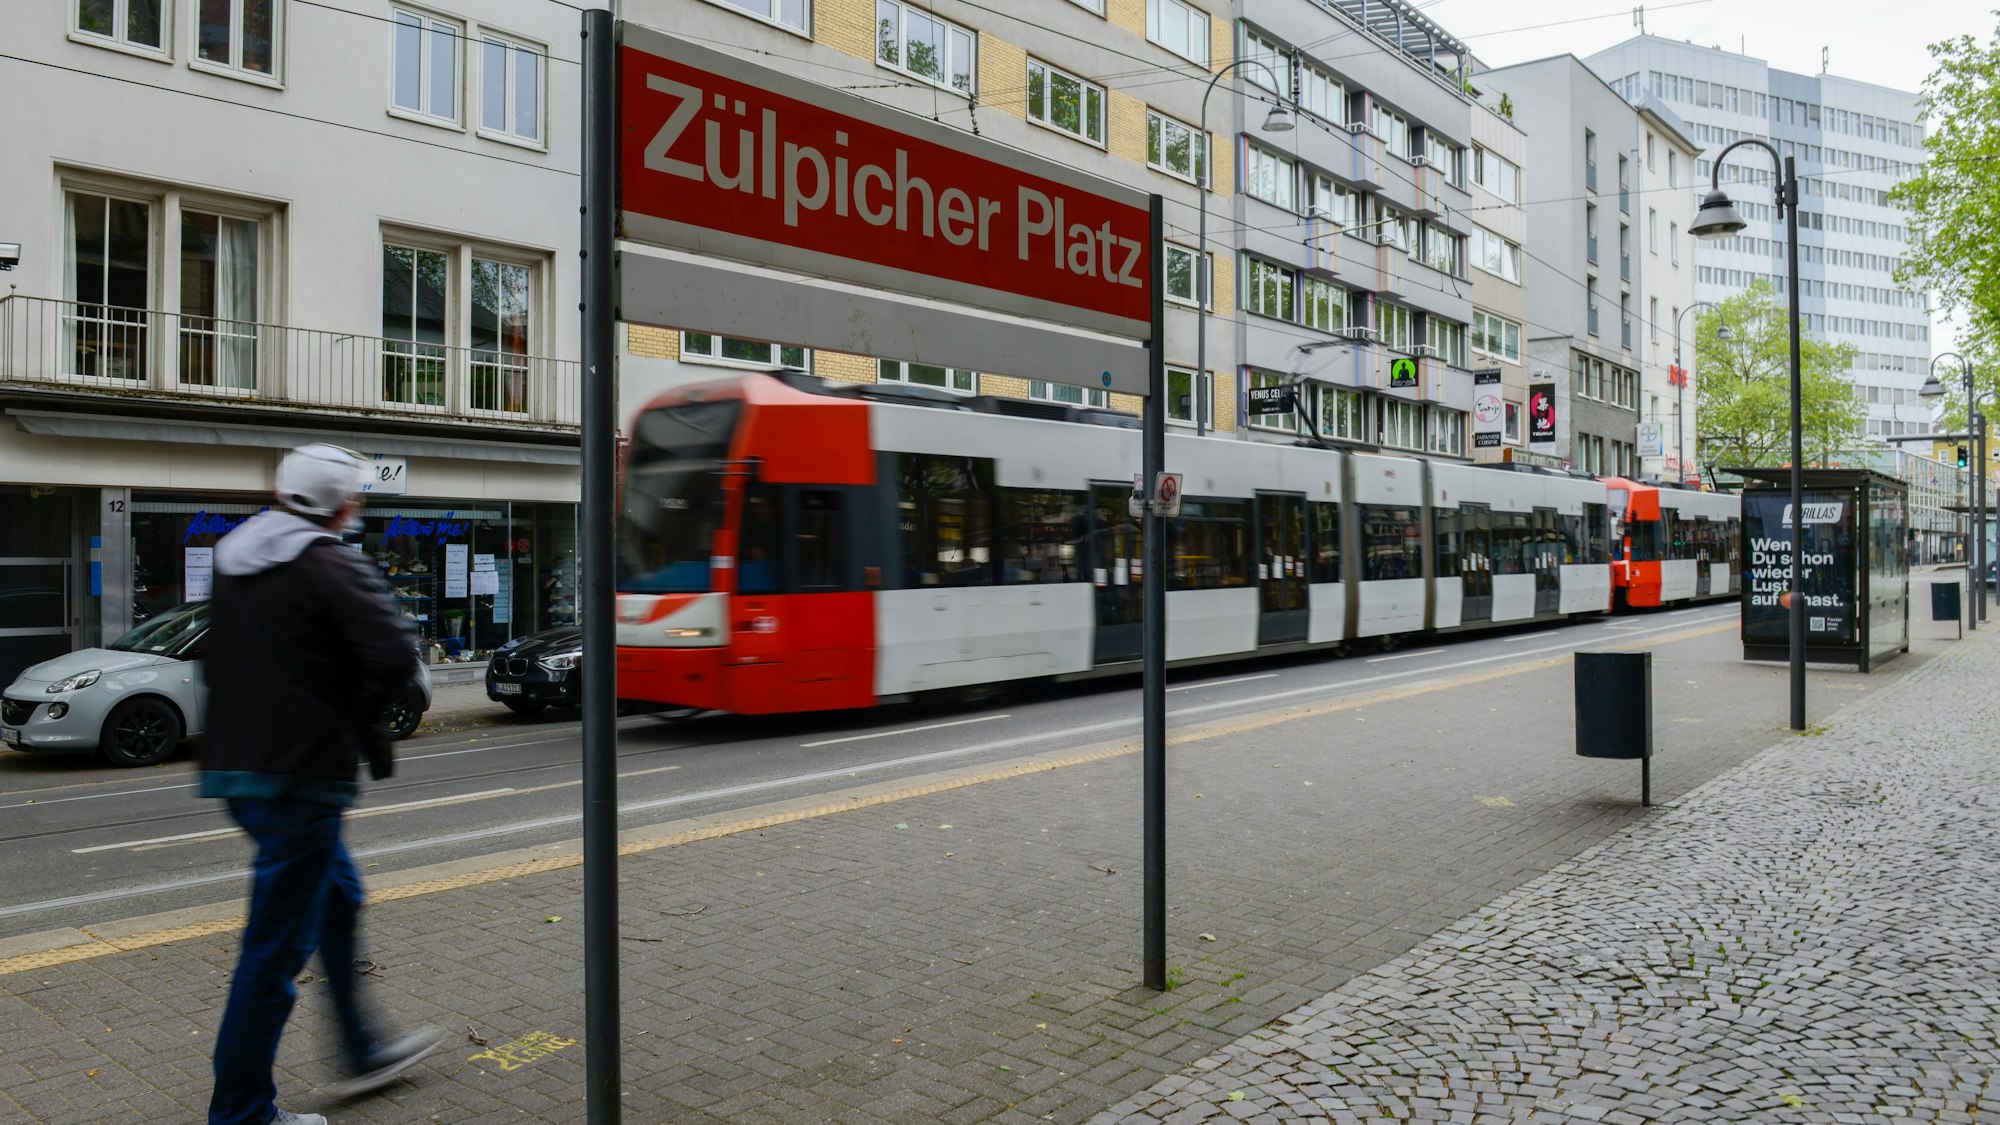 Eine Straßenbahn am Zülpicher Platz